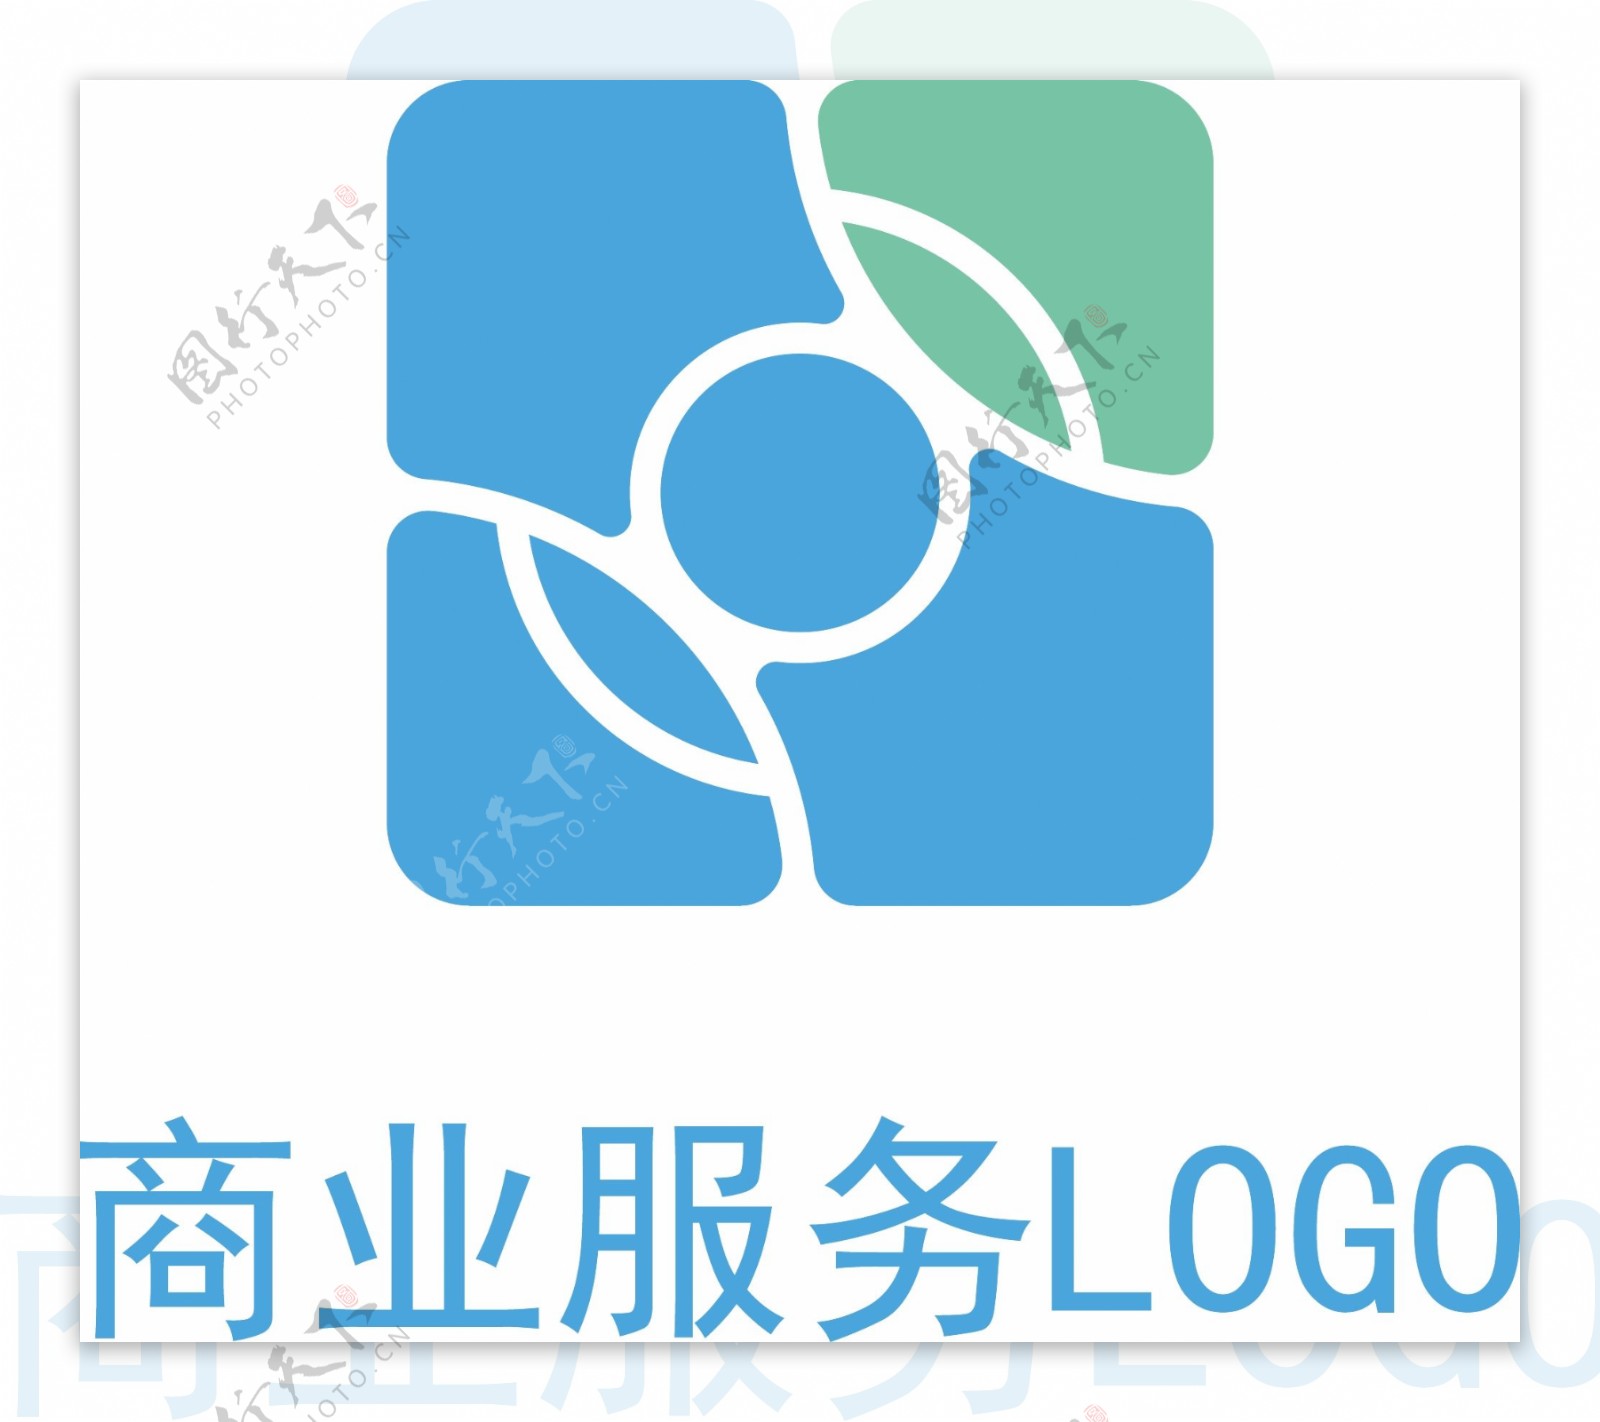 简约大气科技金融公司企业服务logo